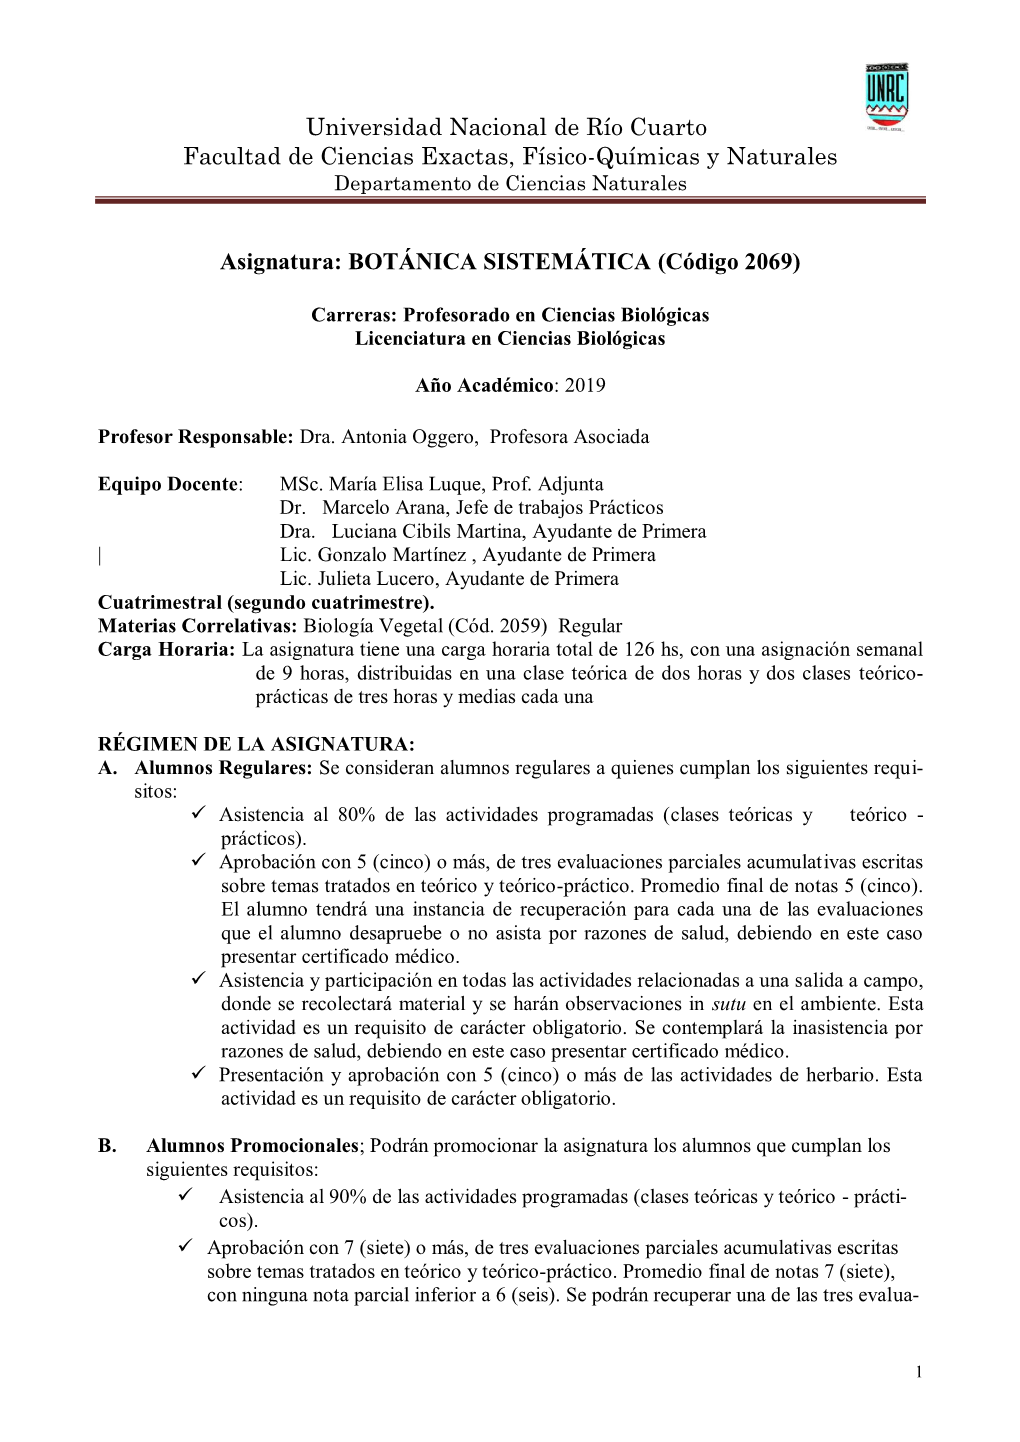 Universidad Nacional De Río Cuarto Facultad De Ciencias Exactas, Físico-Químicas Y Naturales Departamento De Ciencias Naturales